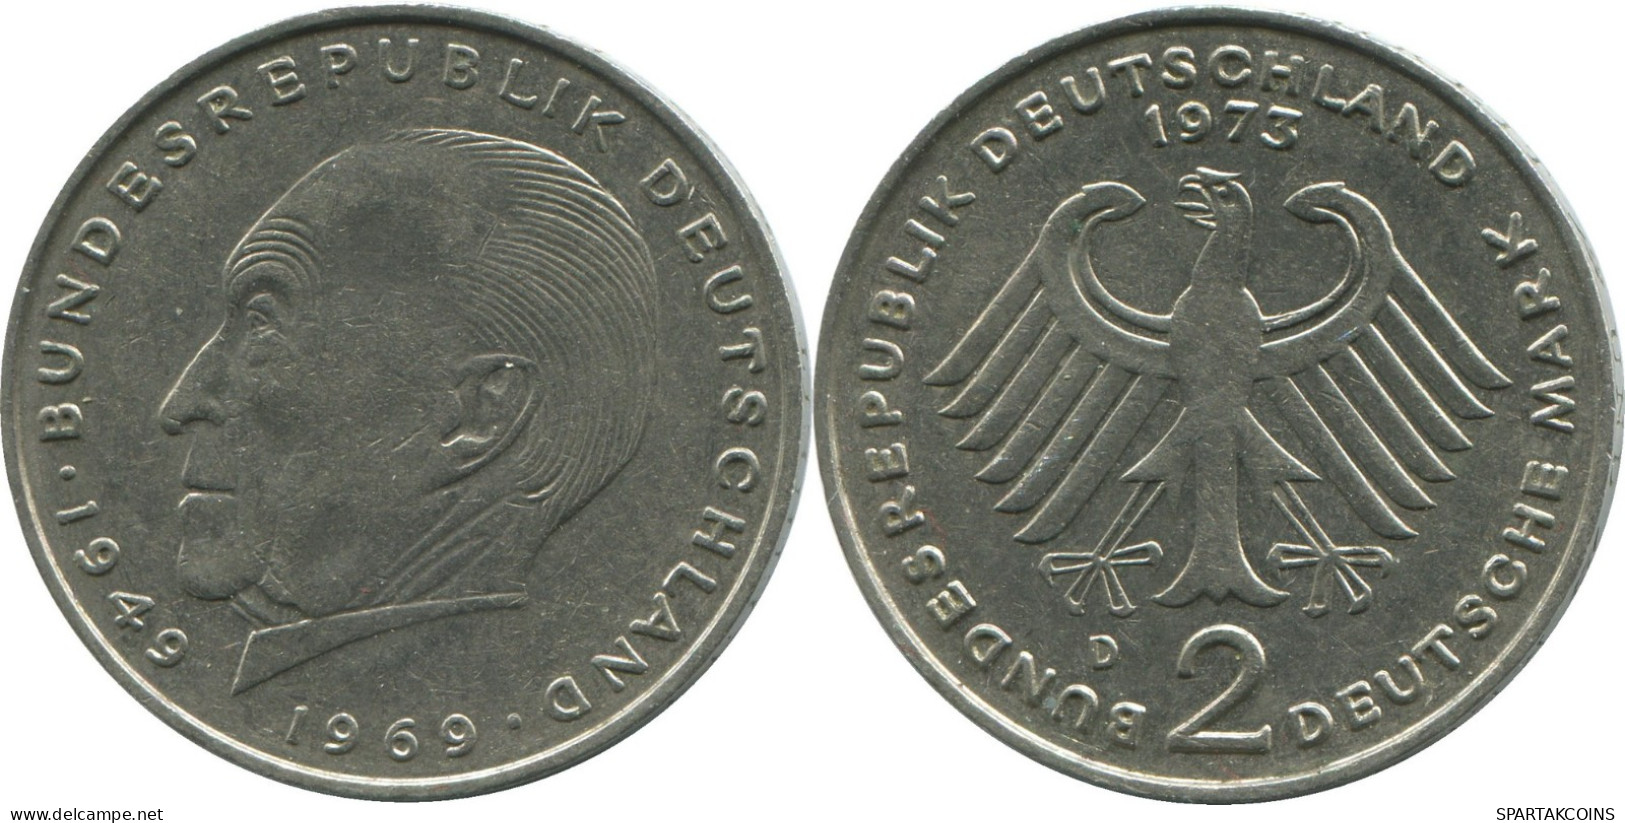 2 DM 1973 D BRD ALEMANIA Moneda GERMANY #DE10388.5.E.A - 2 Mark